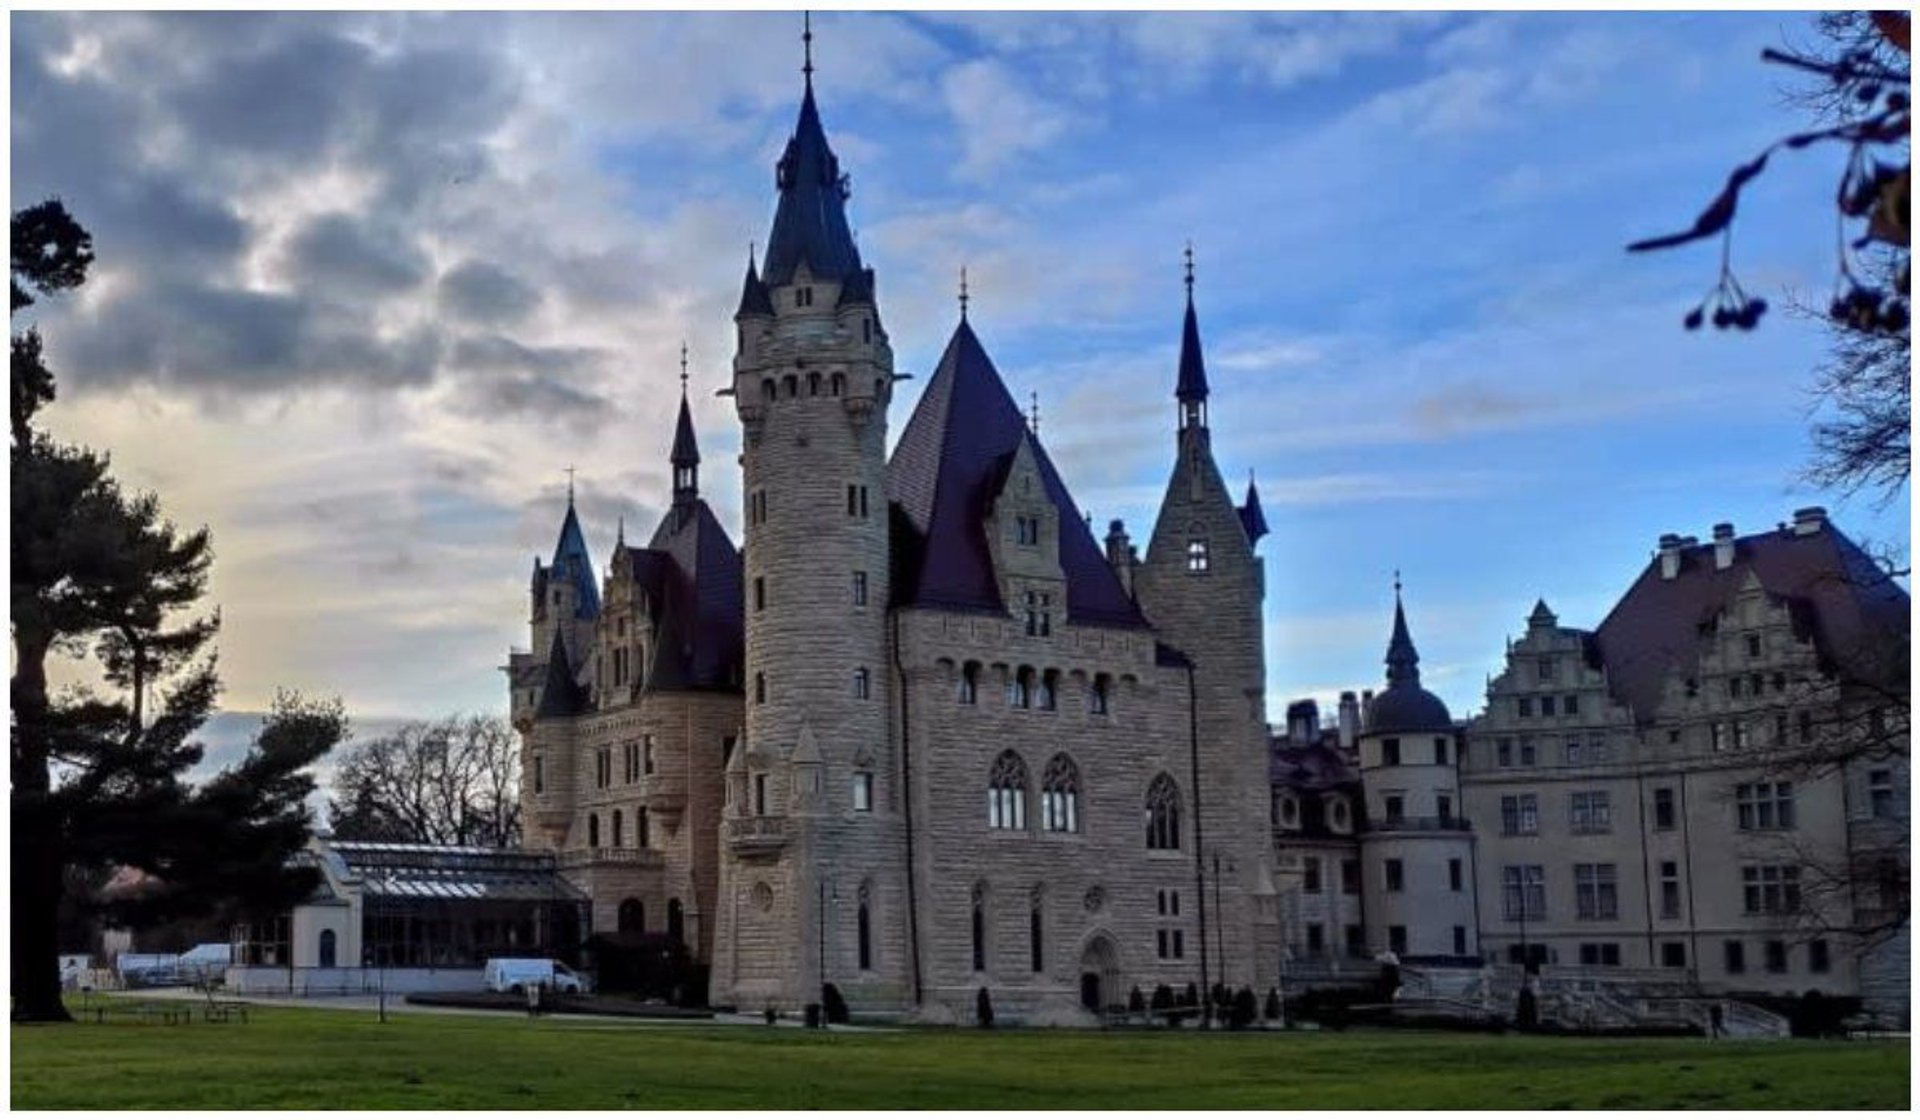 Zamek niczym z Harry-ego Pottera mieści się w Polsce. Pałac w Mosznej oddaje magiczny klimat